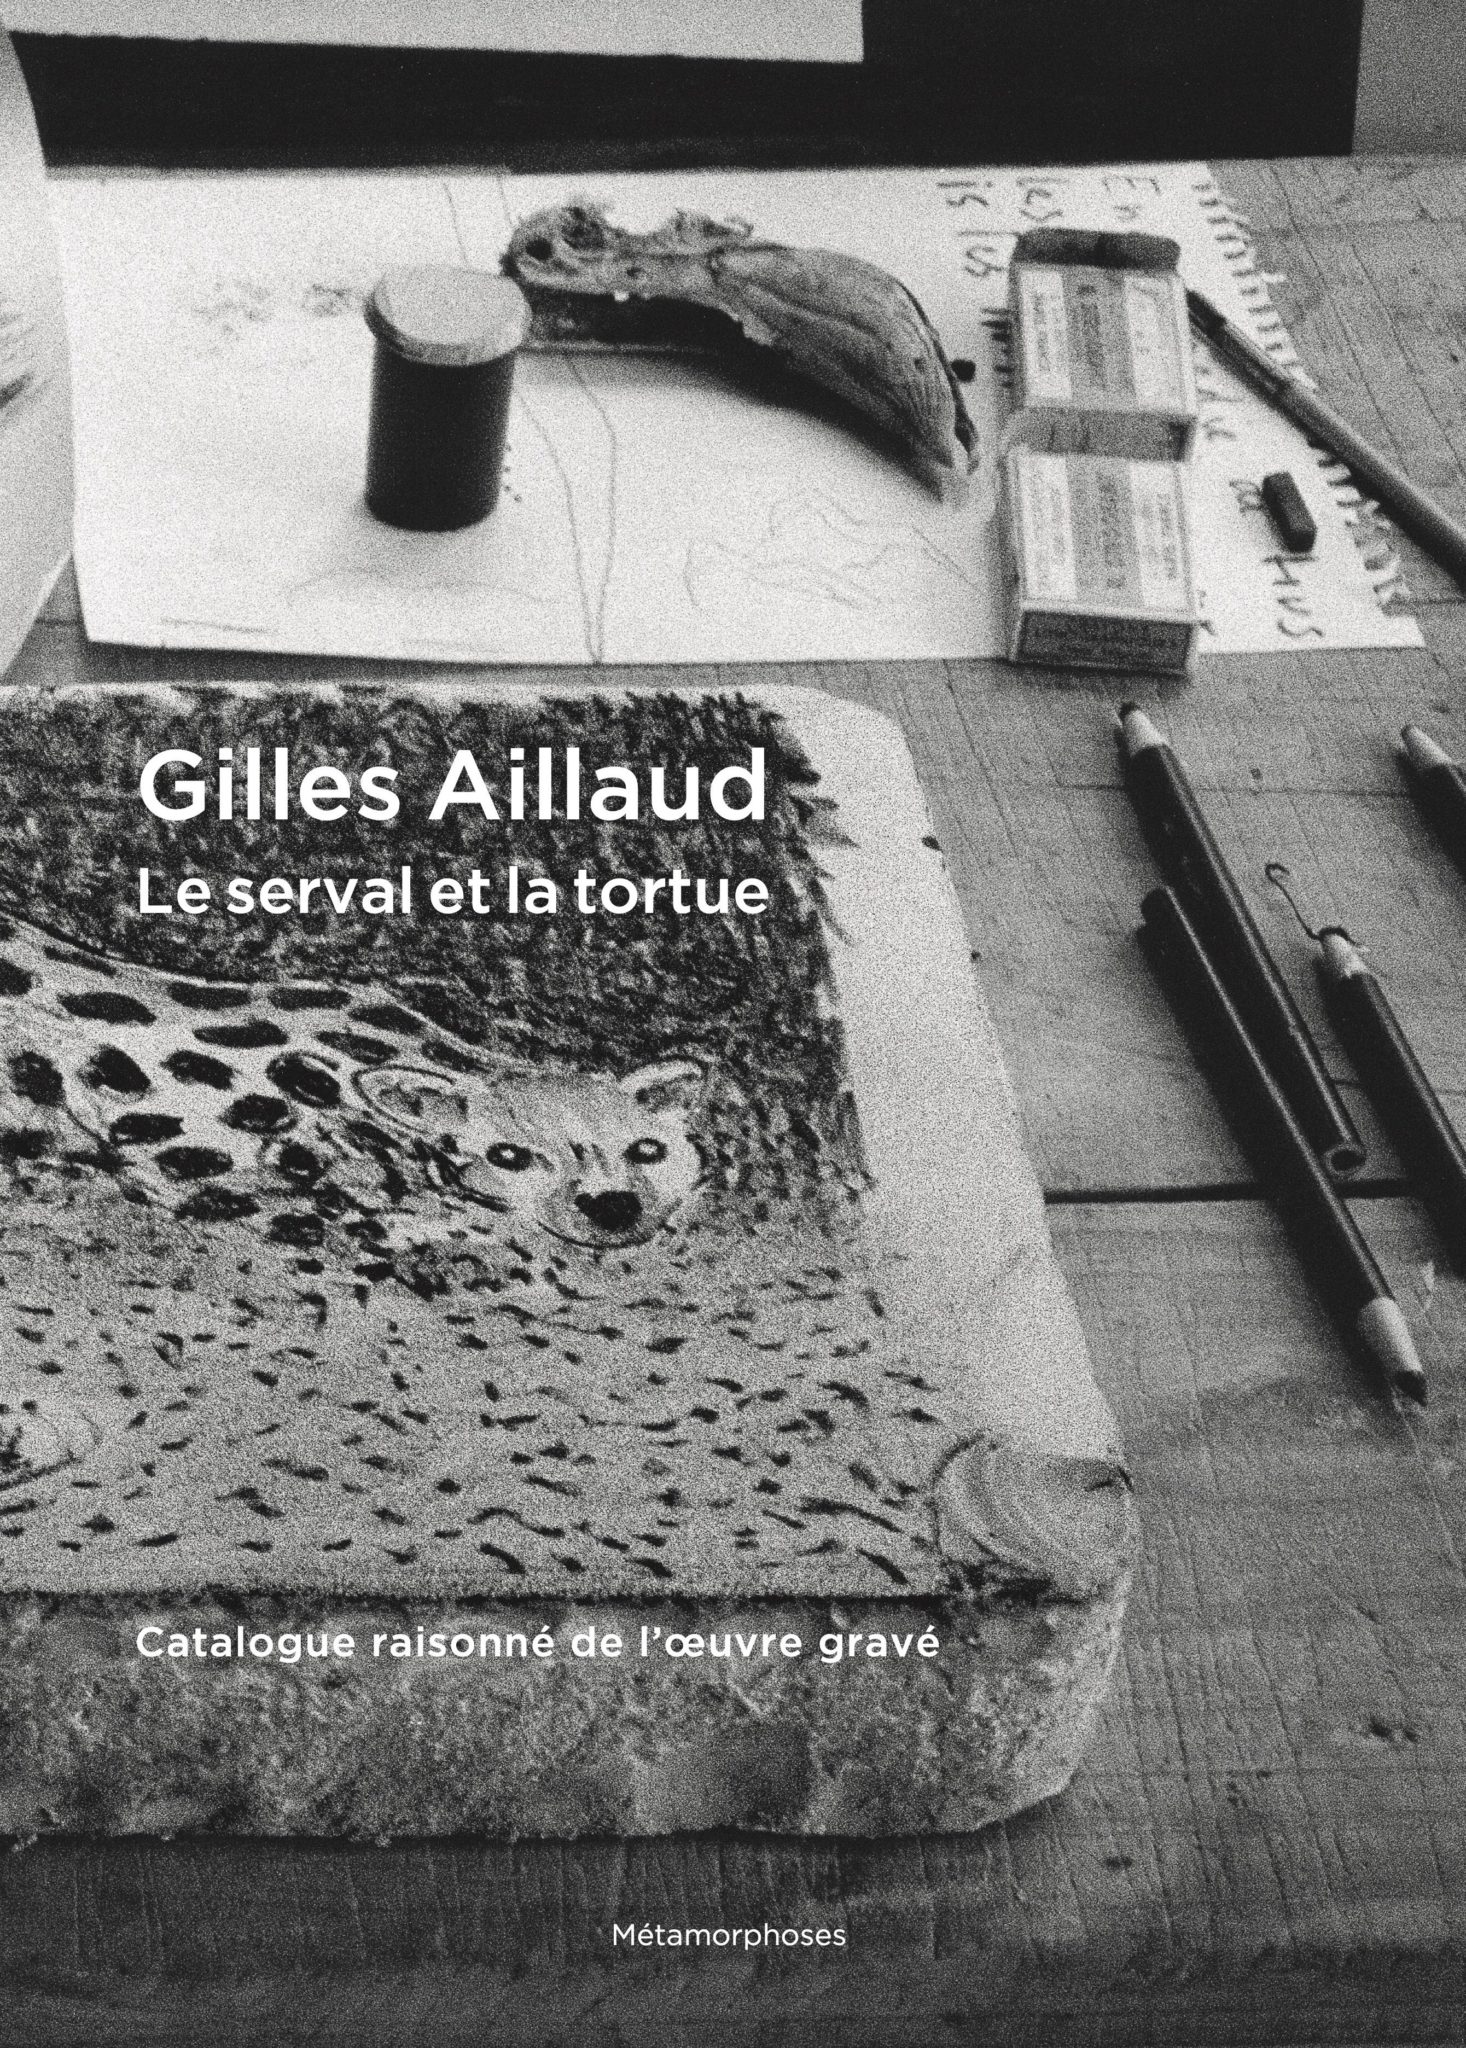 Gilles Aillaud. Le serval et la tortue